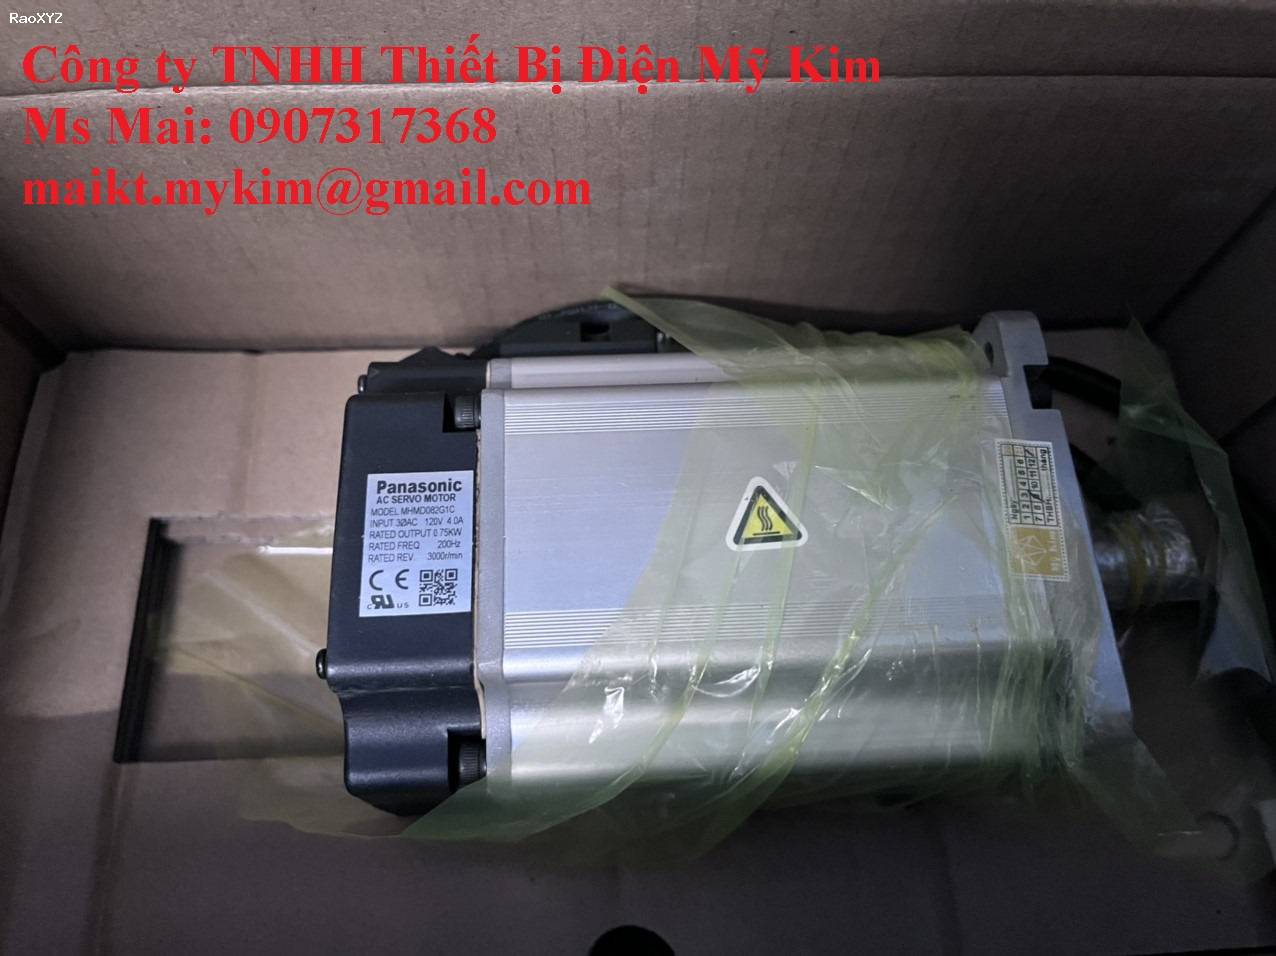 Motor MHMD082G1C - Thiết Bị Điện Mỹ Kim - 0907317368